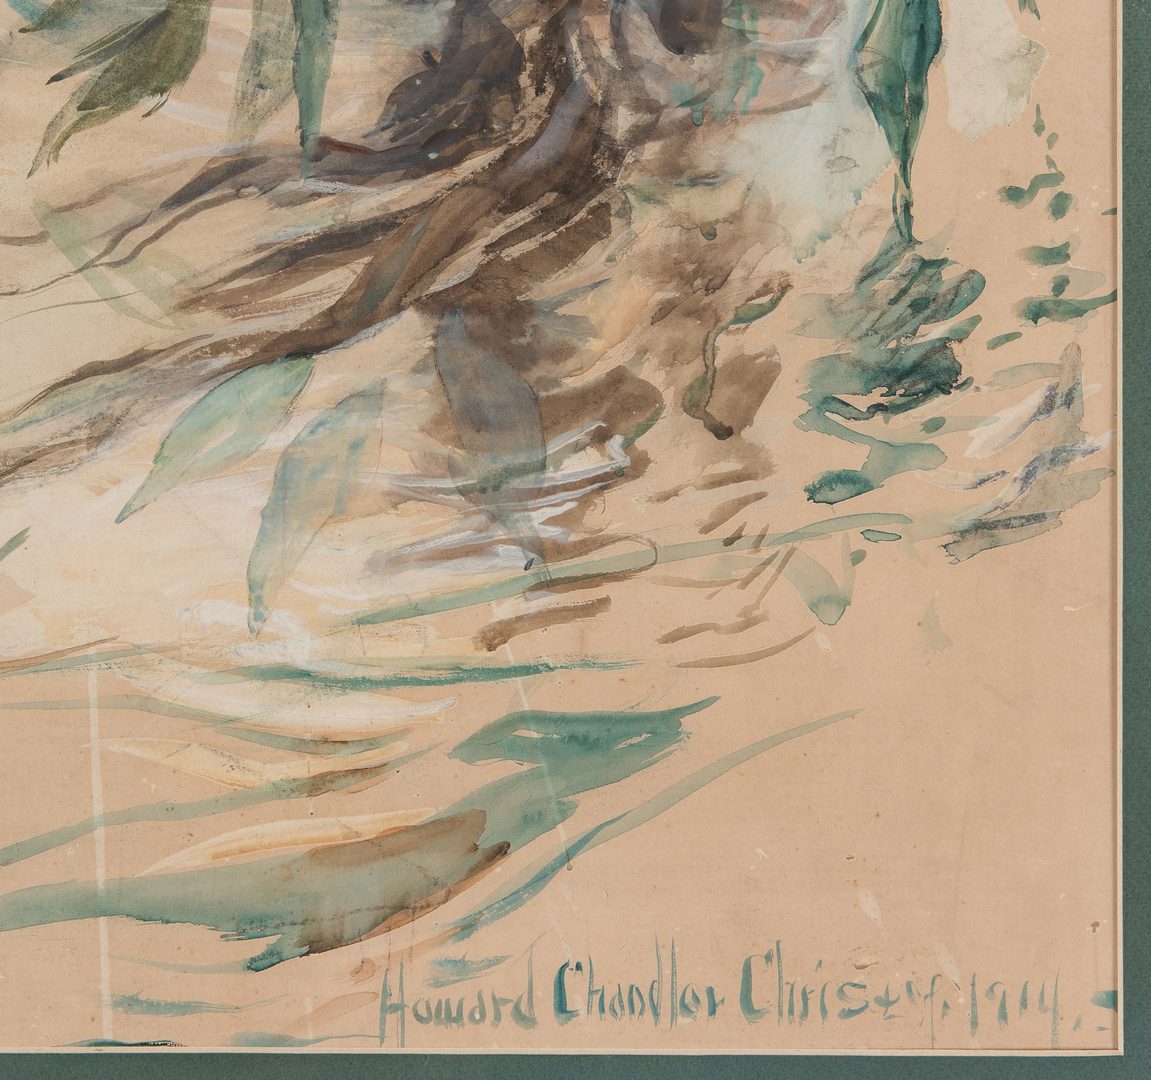 Lot 223: Howard Chandler Christy Watercolor Illustration, "Eve"